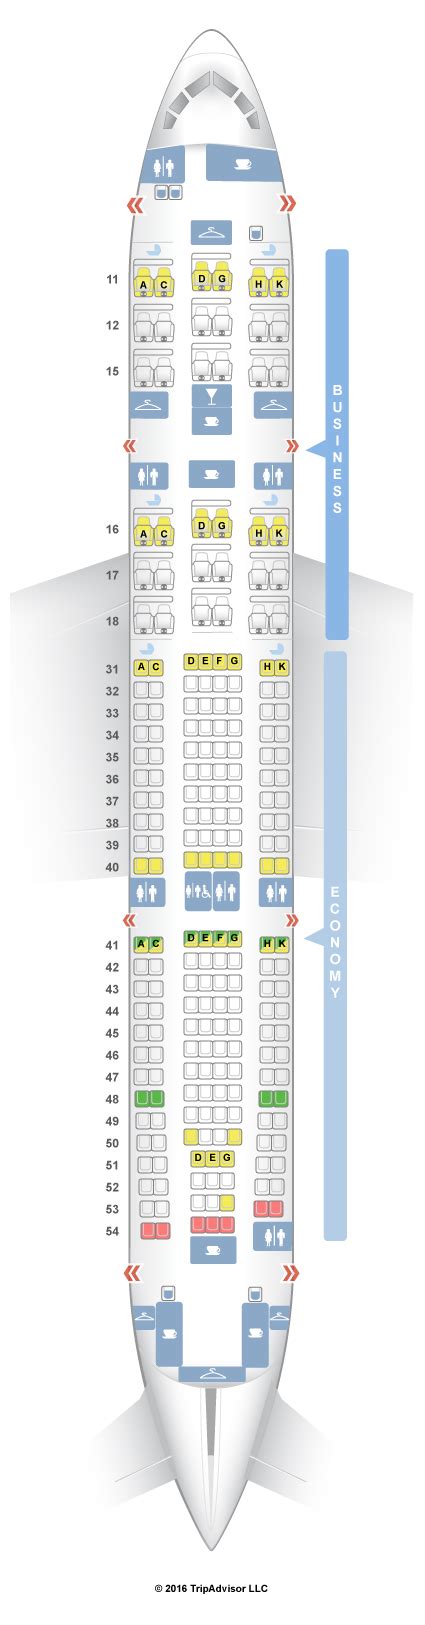 Seatguru Seat Map Hainan Airlines Airbus A330 200 332